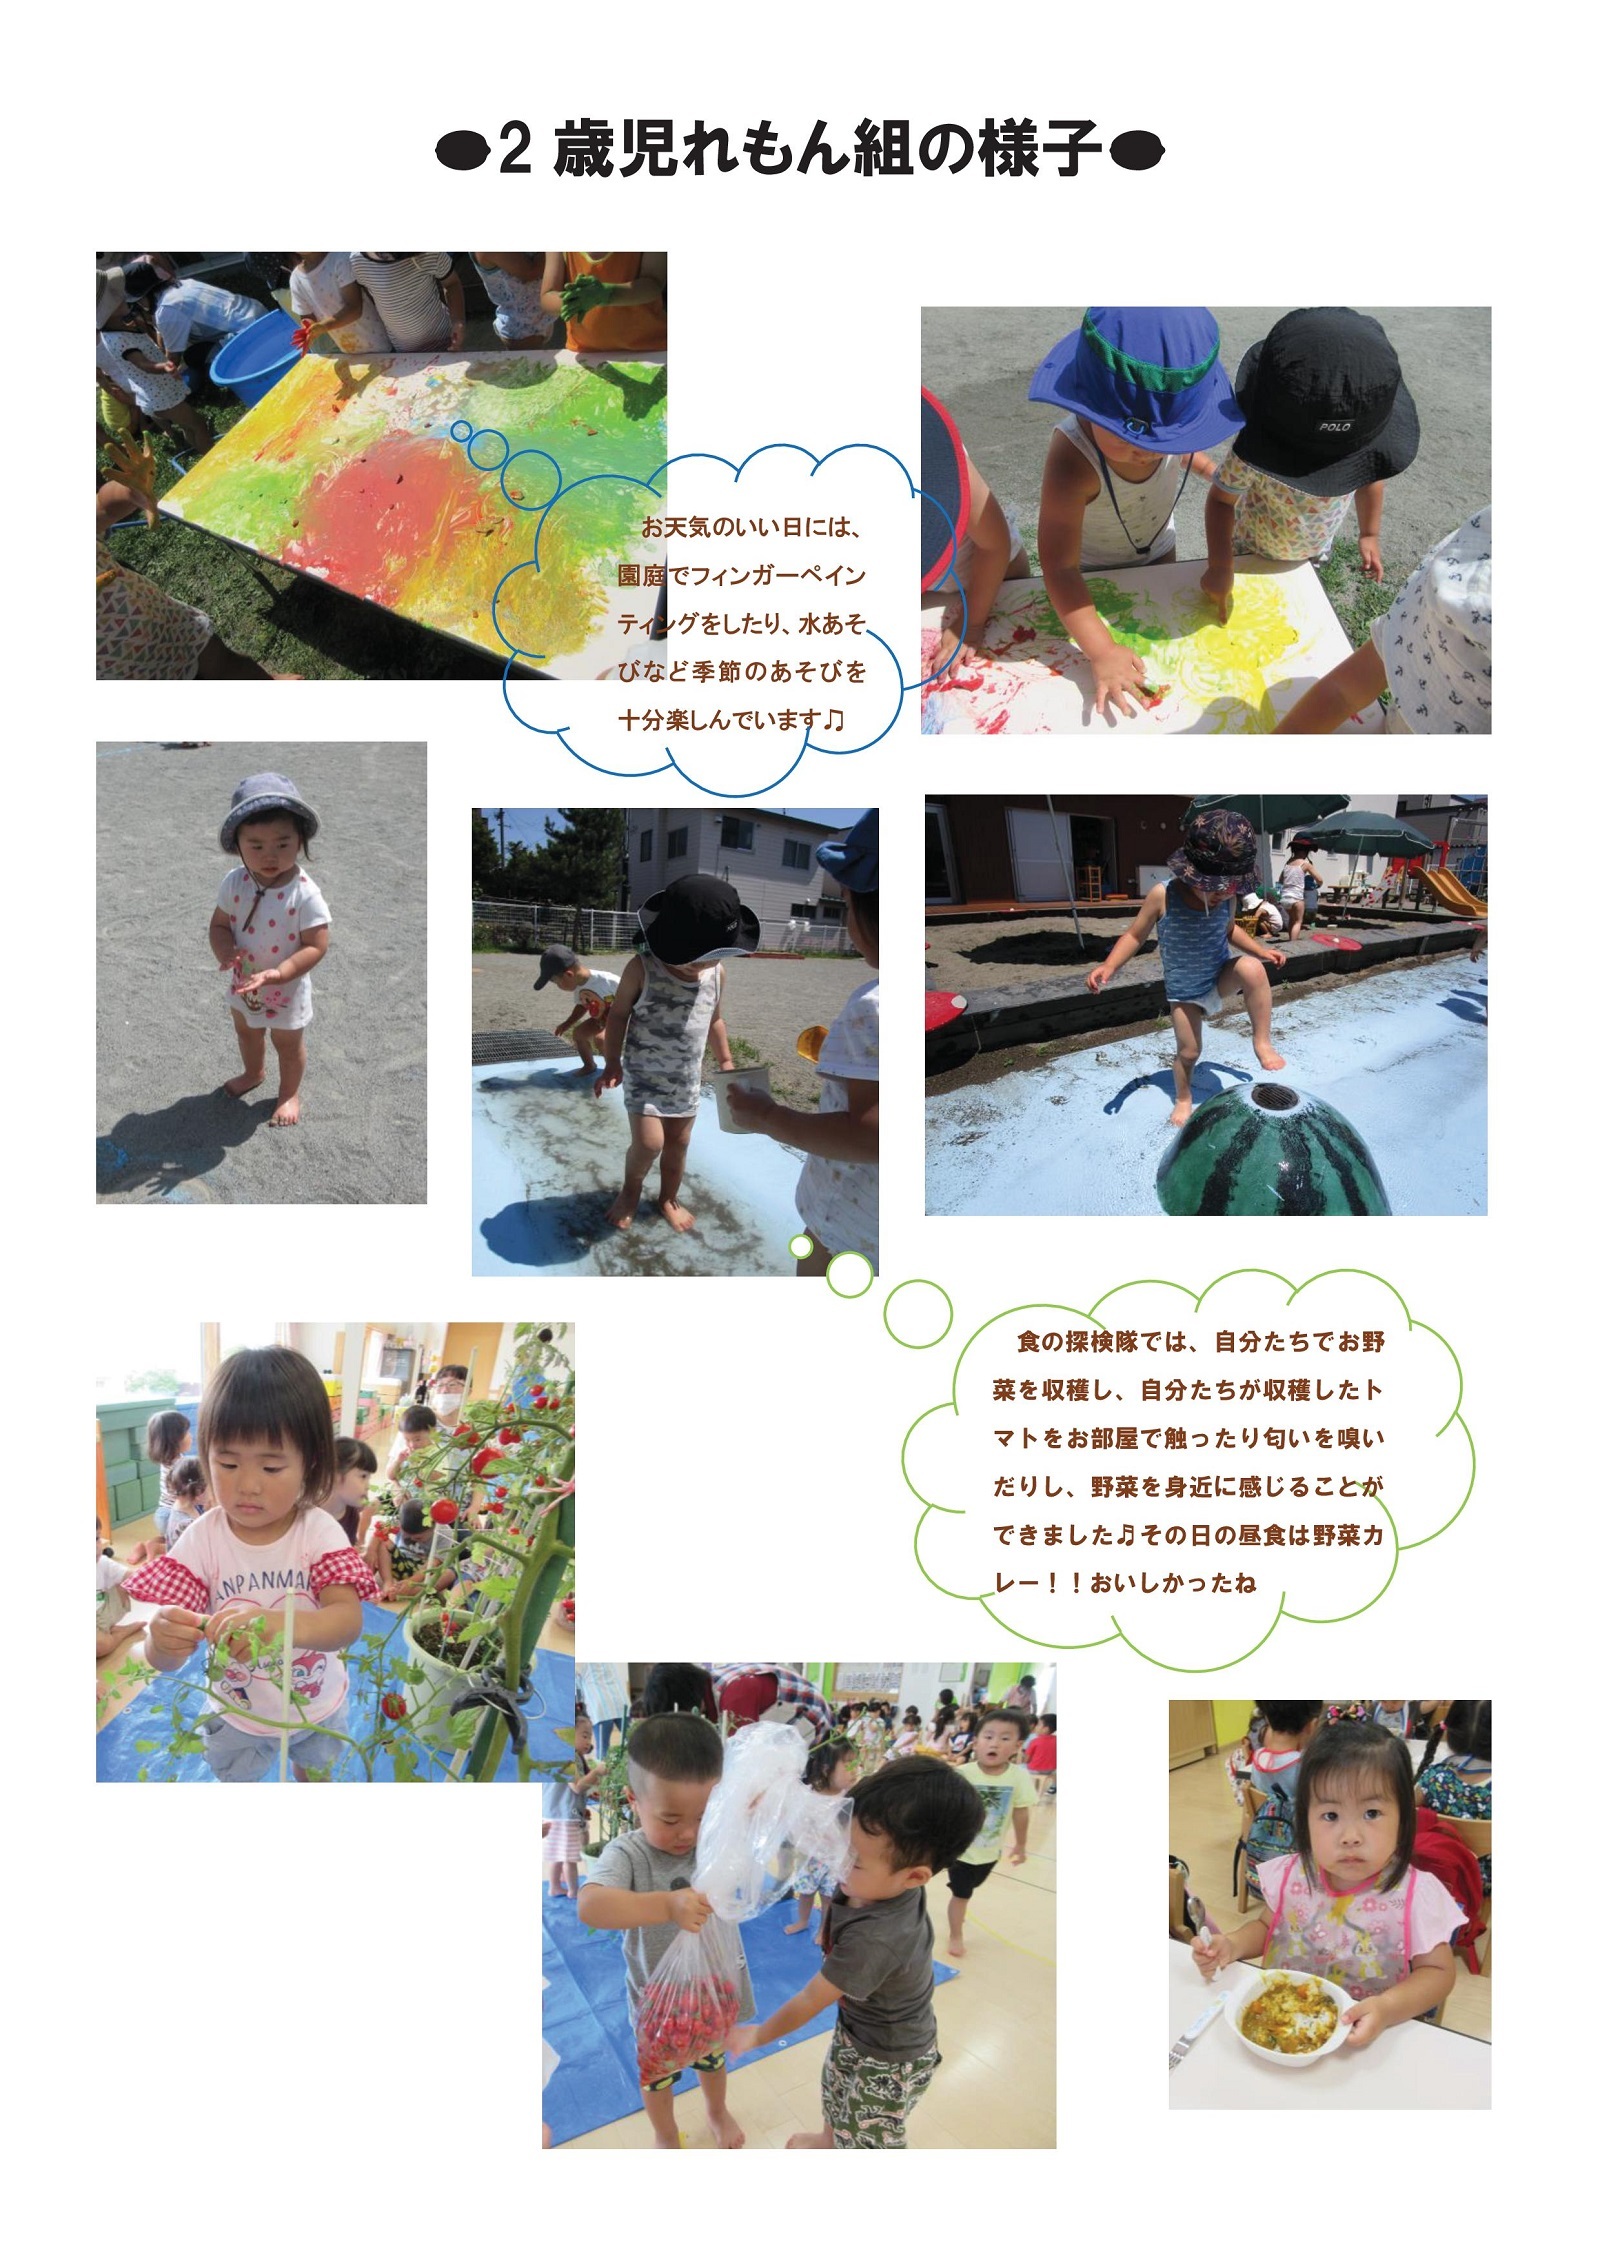 虹いろ保育所通信(2歳児れもん組の様子・令和2年夏)の画像